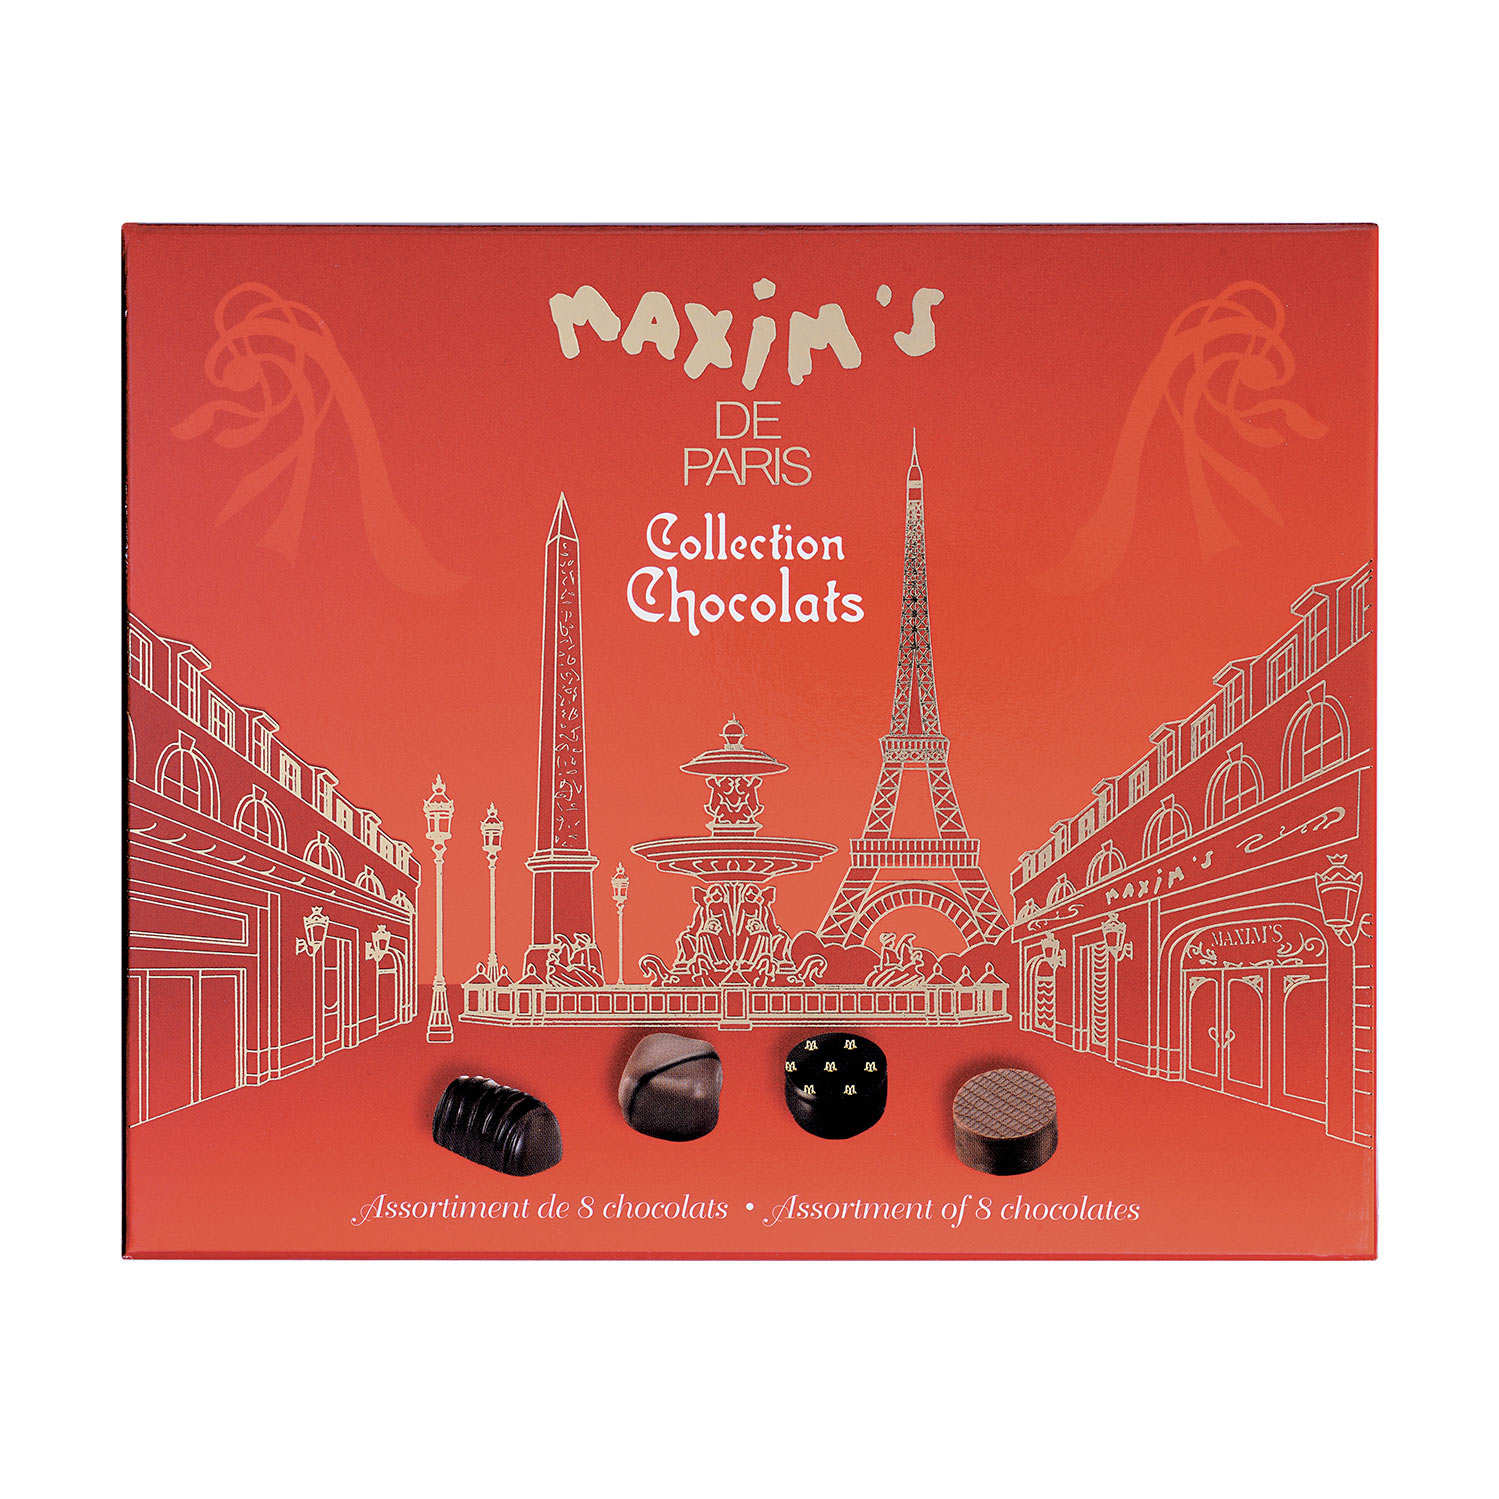 "Paris" Assortement Chocolates Maxim's Maxim's de Paris